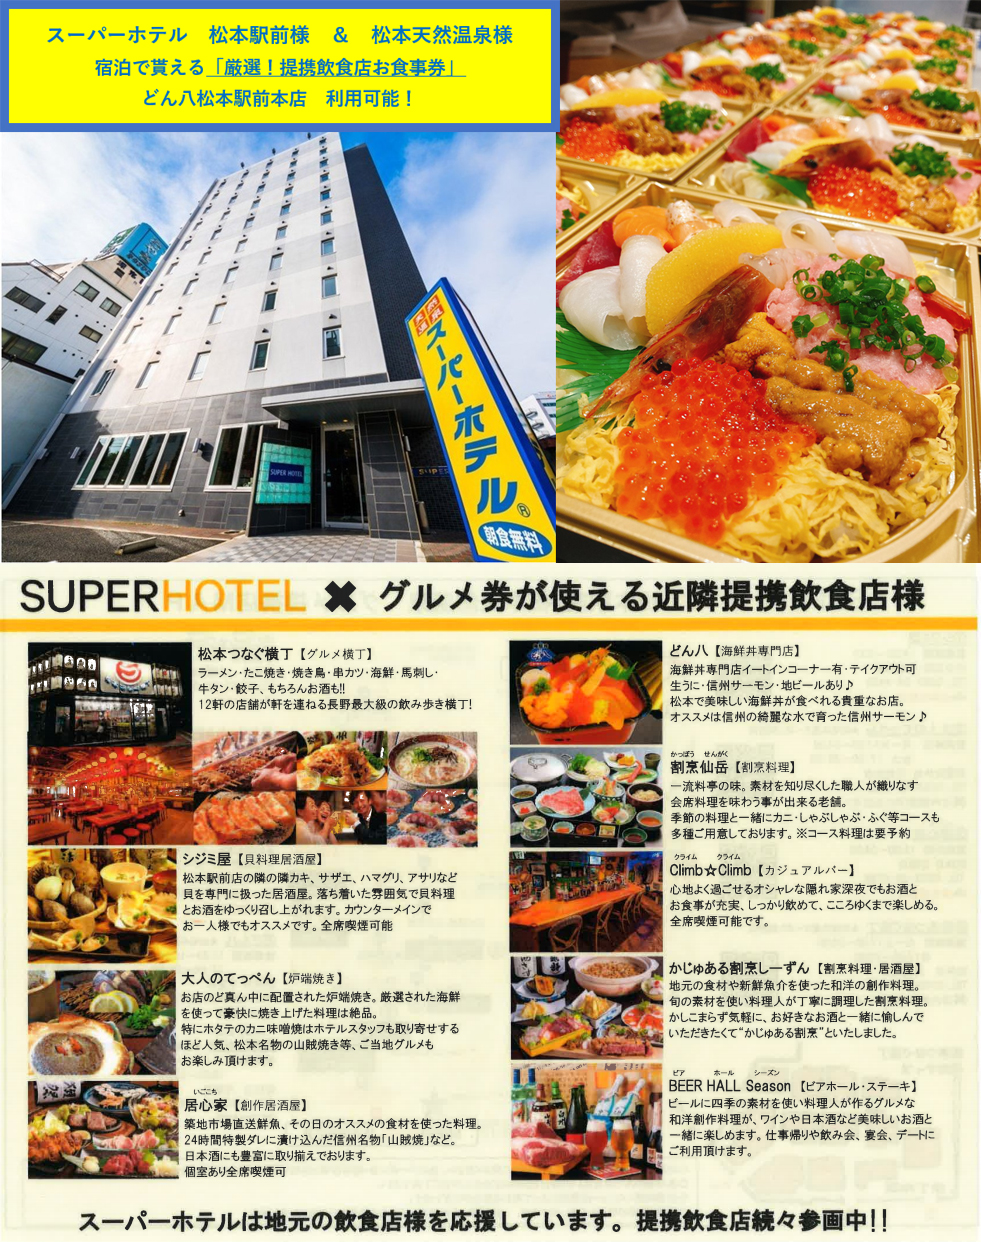 スーパーホテルのお食事券が使えます どん八 松本駅前店